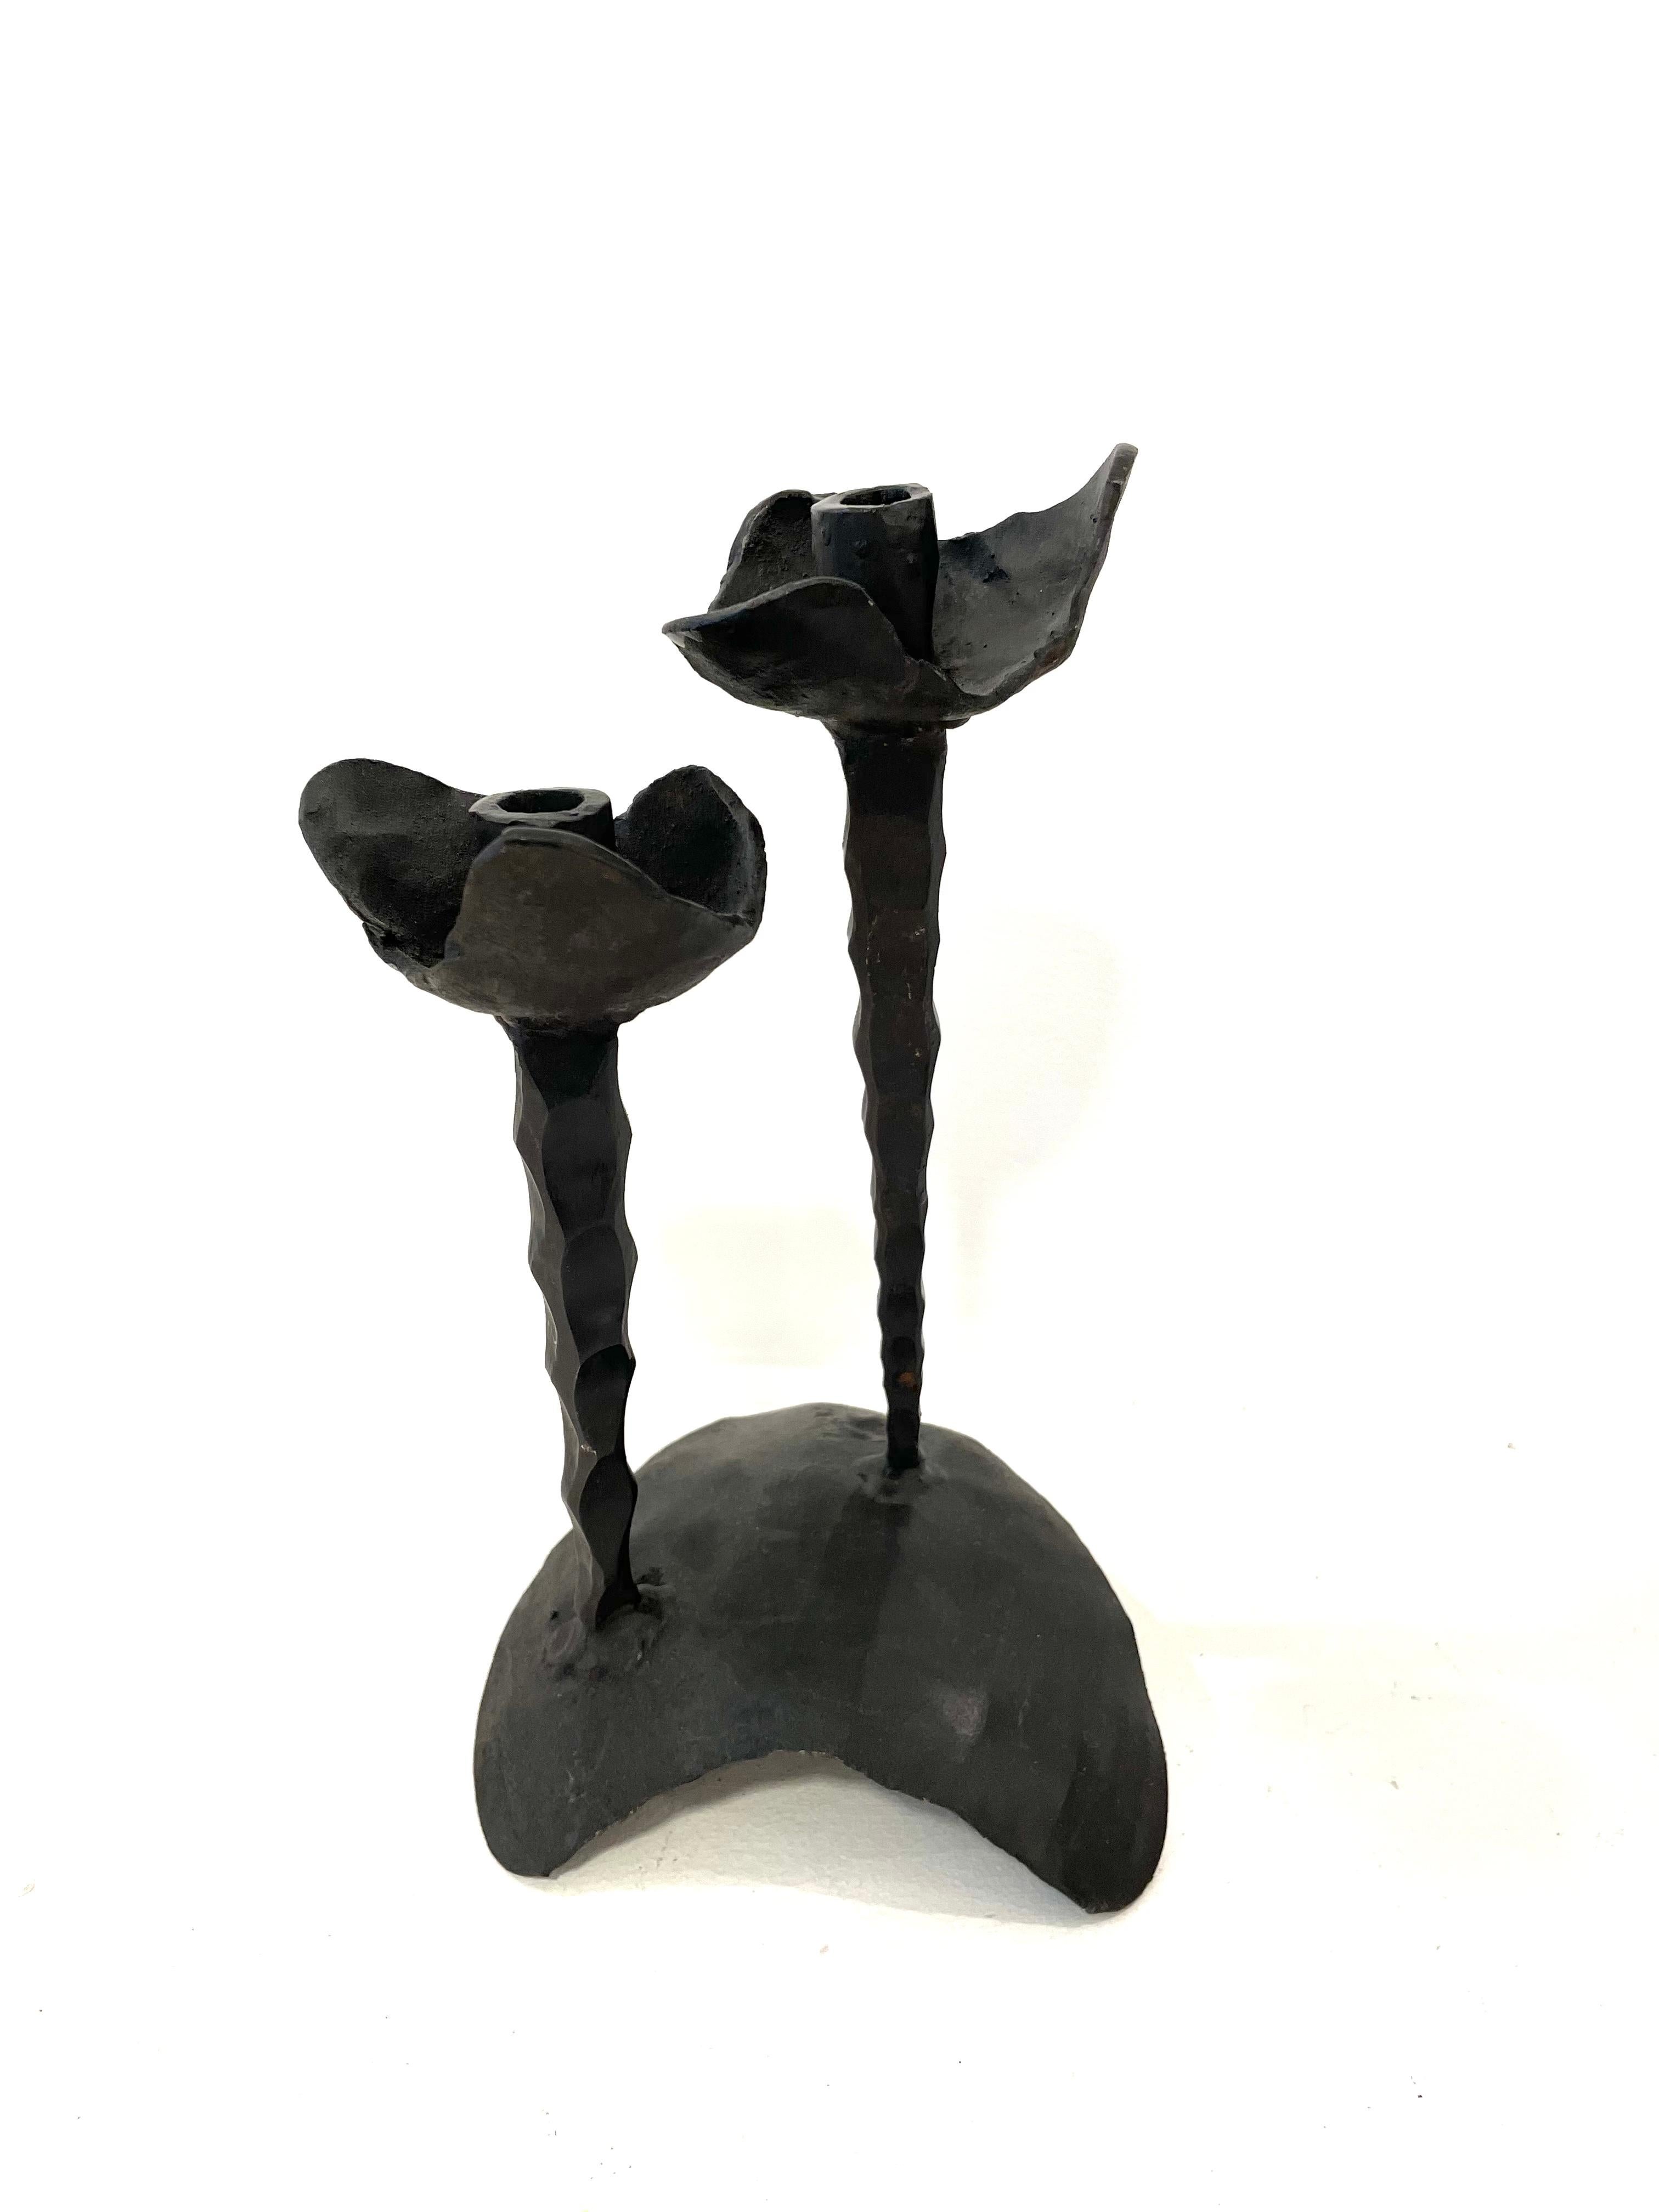 Schabbat-Kerzenhalter aus Eisen, hergestellt im brutalistischen Stil von David Palombo. Jeder der für zwei Kerzen ausgelegten Halter ist mit blütenblattähnlichen Formen verziert, die diesem Kerzenhalter ein florales Gesamtmotiv verleihen. 

David